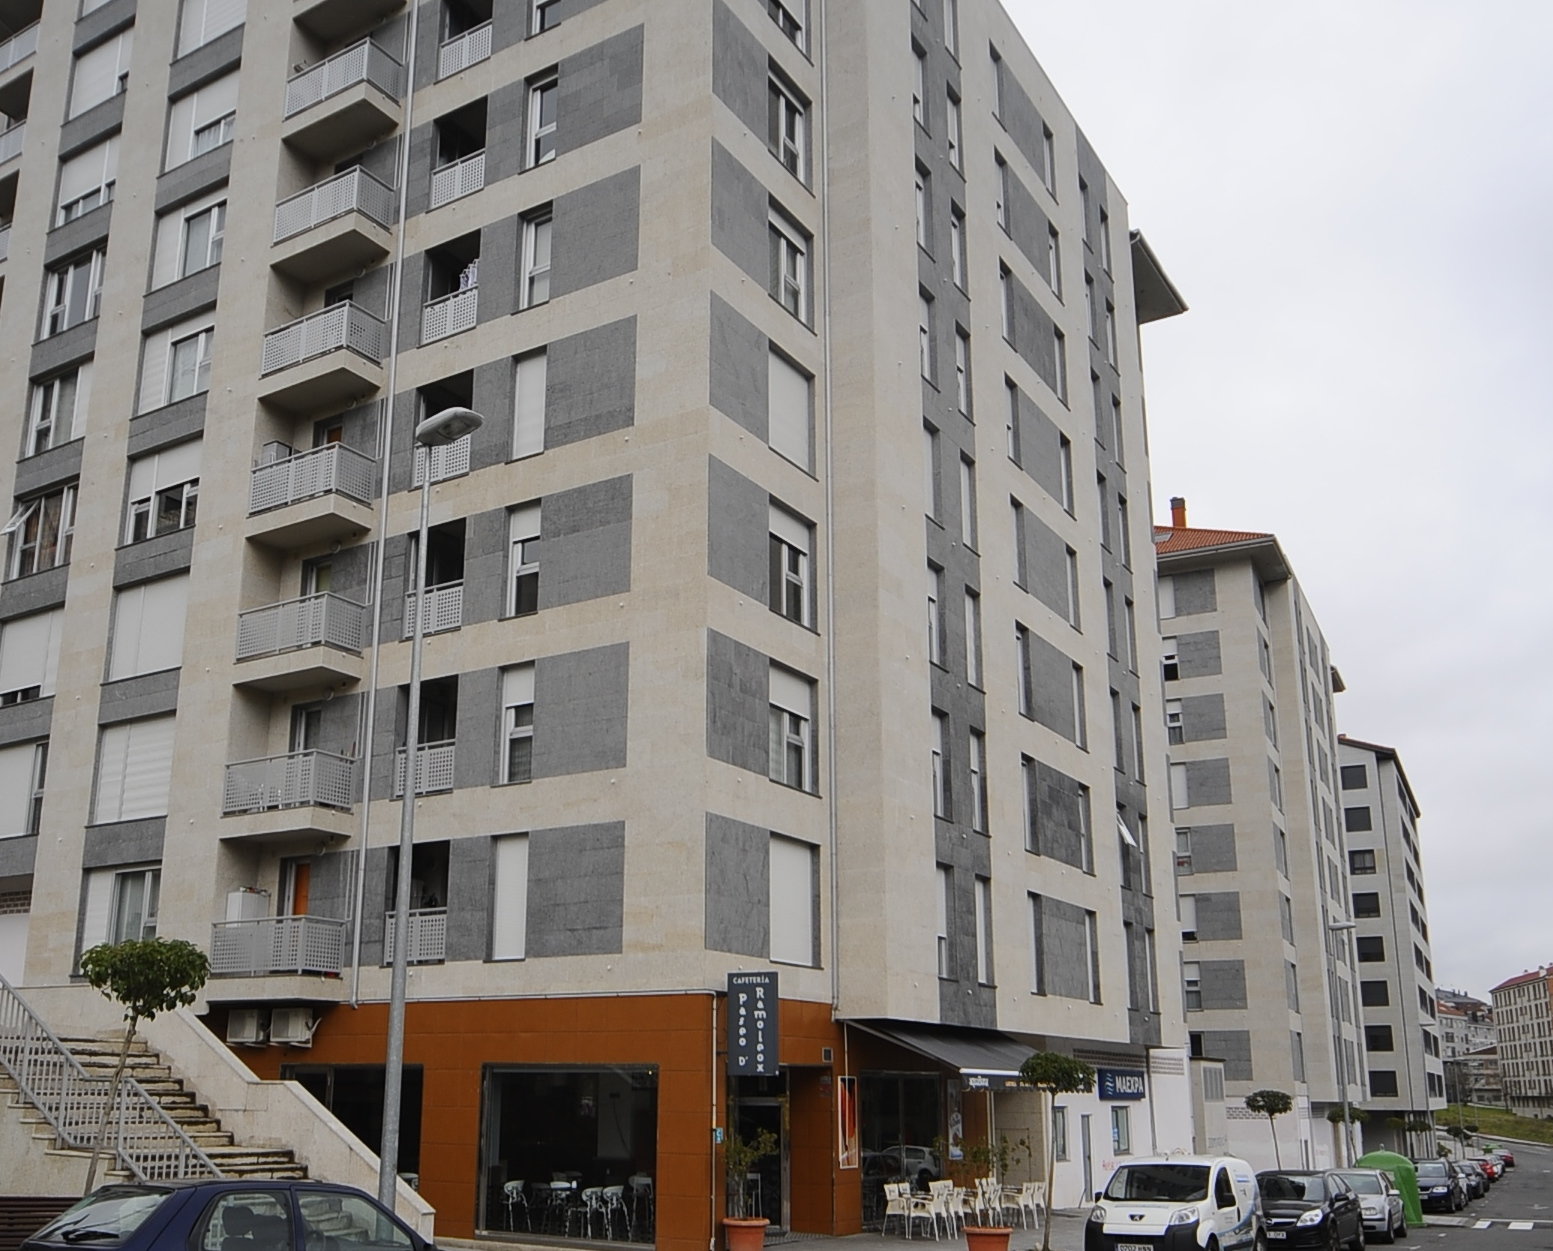 Escandaloso tenaz Autónomo La banca ha vendido ya el 85% de los pisos embargados en Ourense